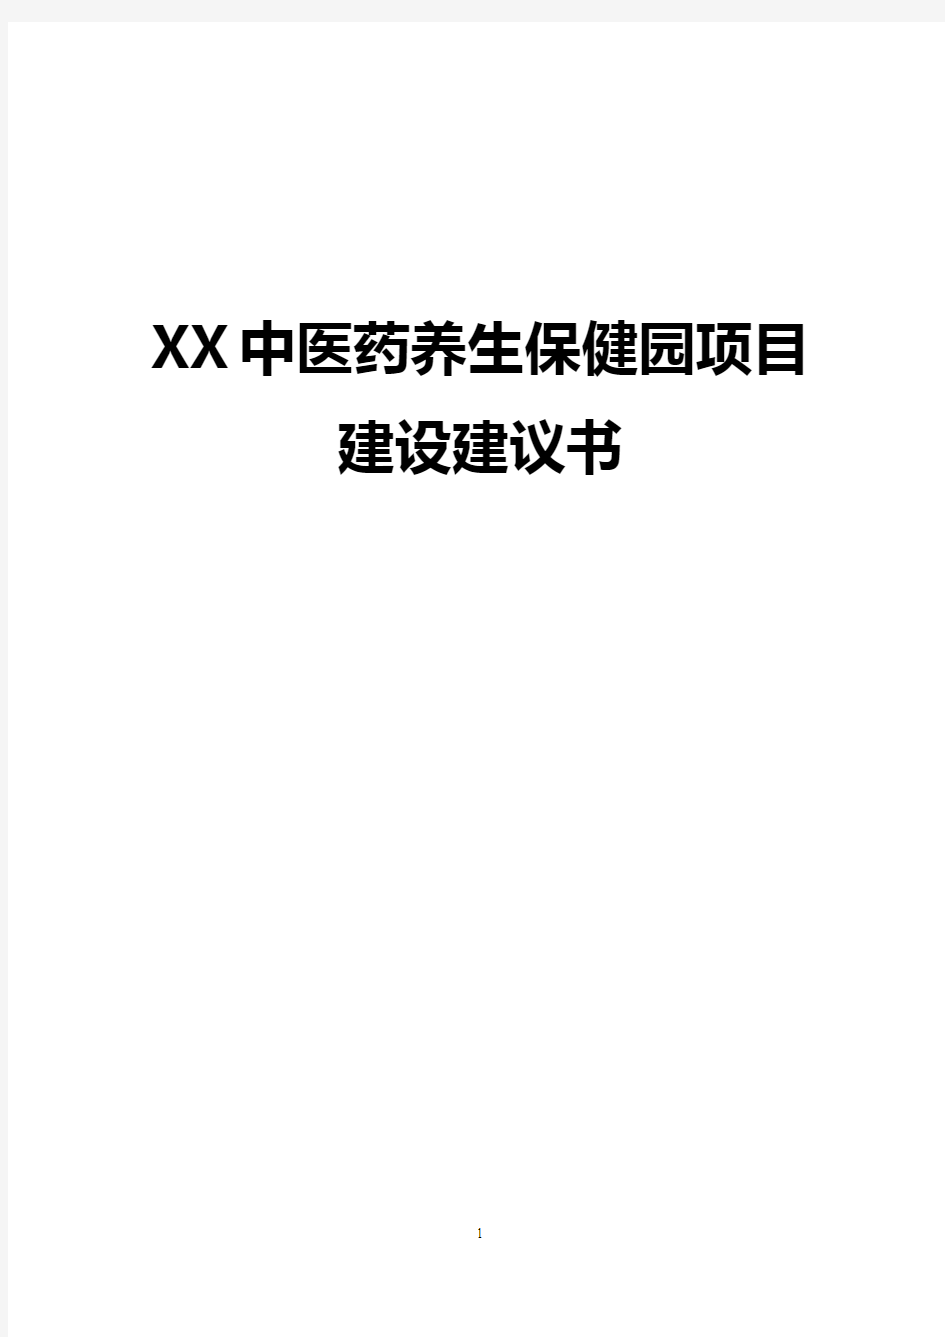 【完整版】XX中医药养生保健园工程项目建设建议书